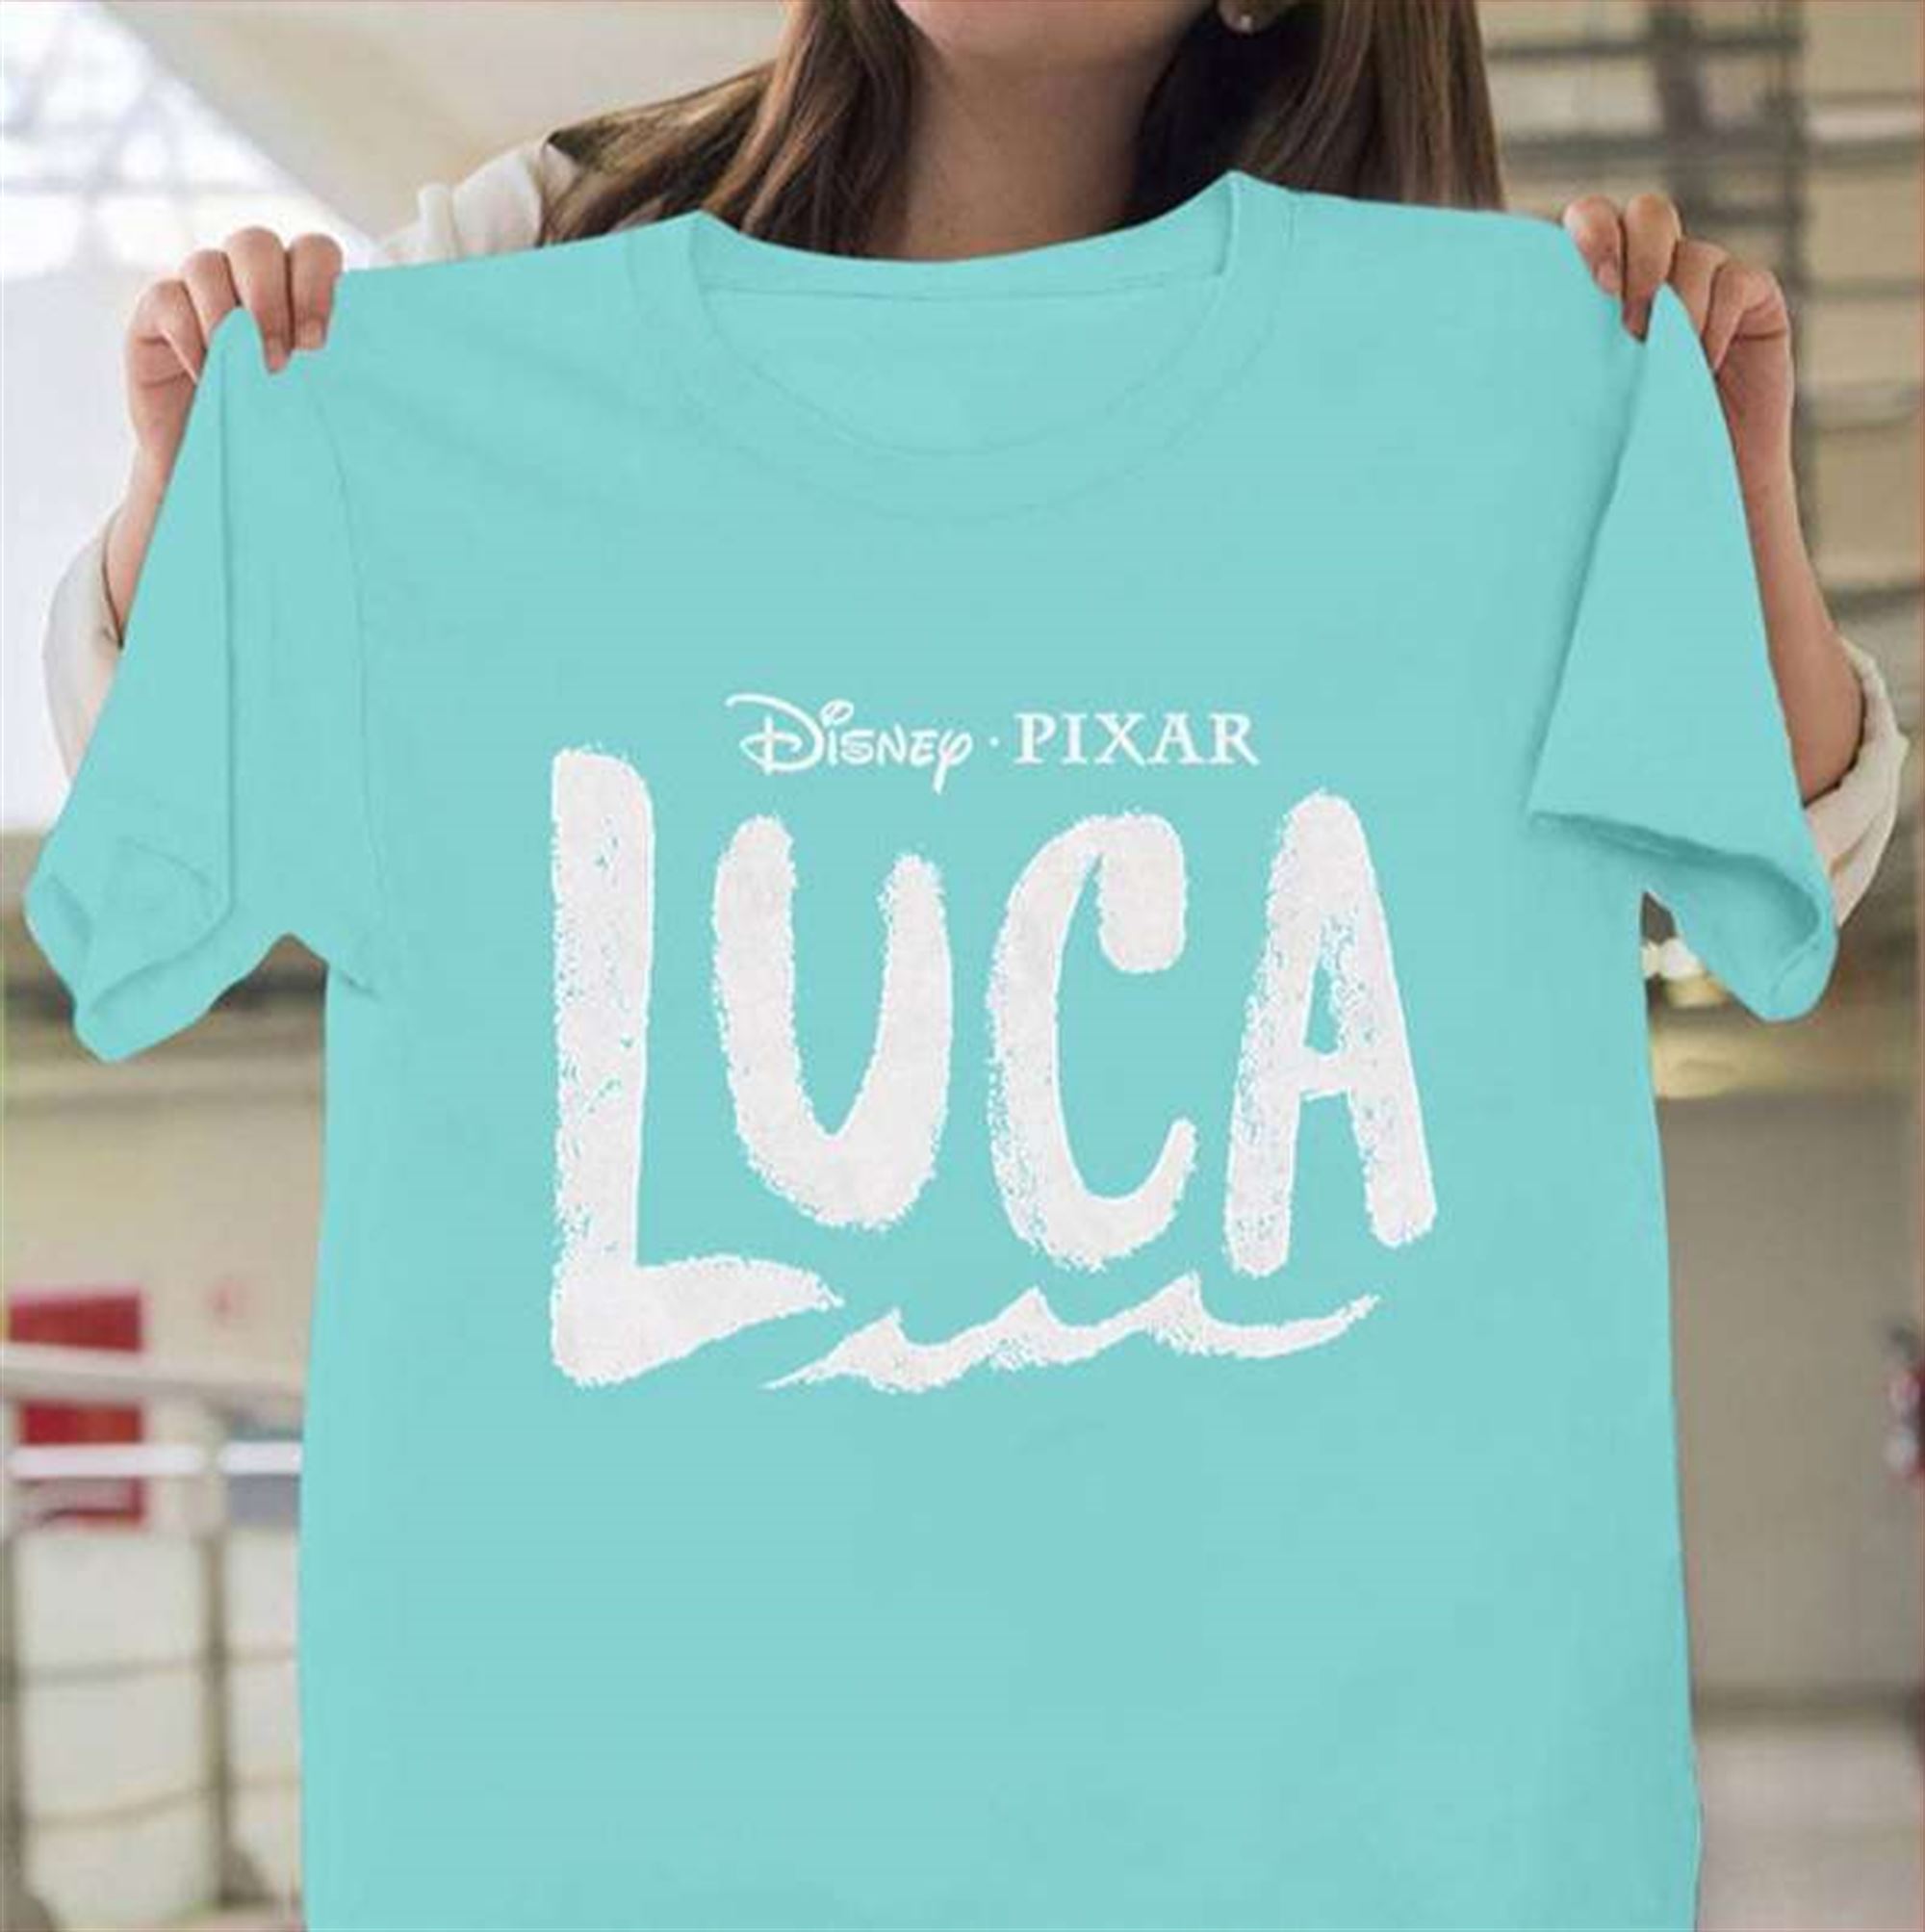 Luca Big Luca Disney Pixar T Shirt Full Size Up To 5xl